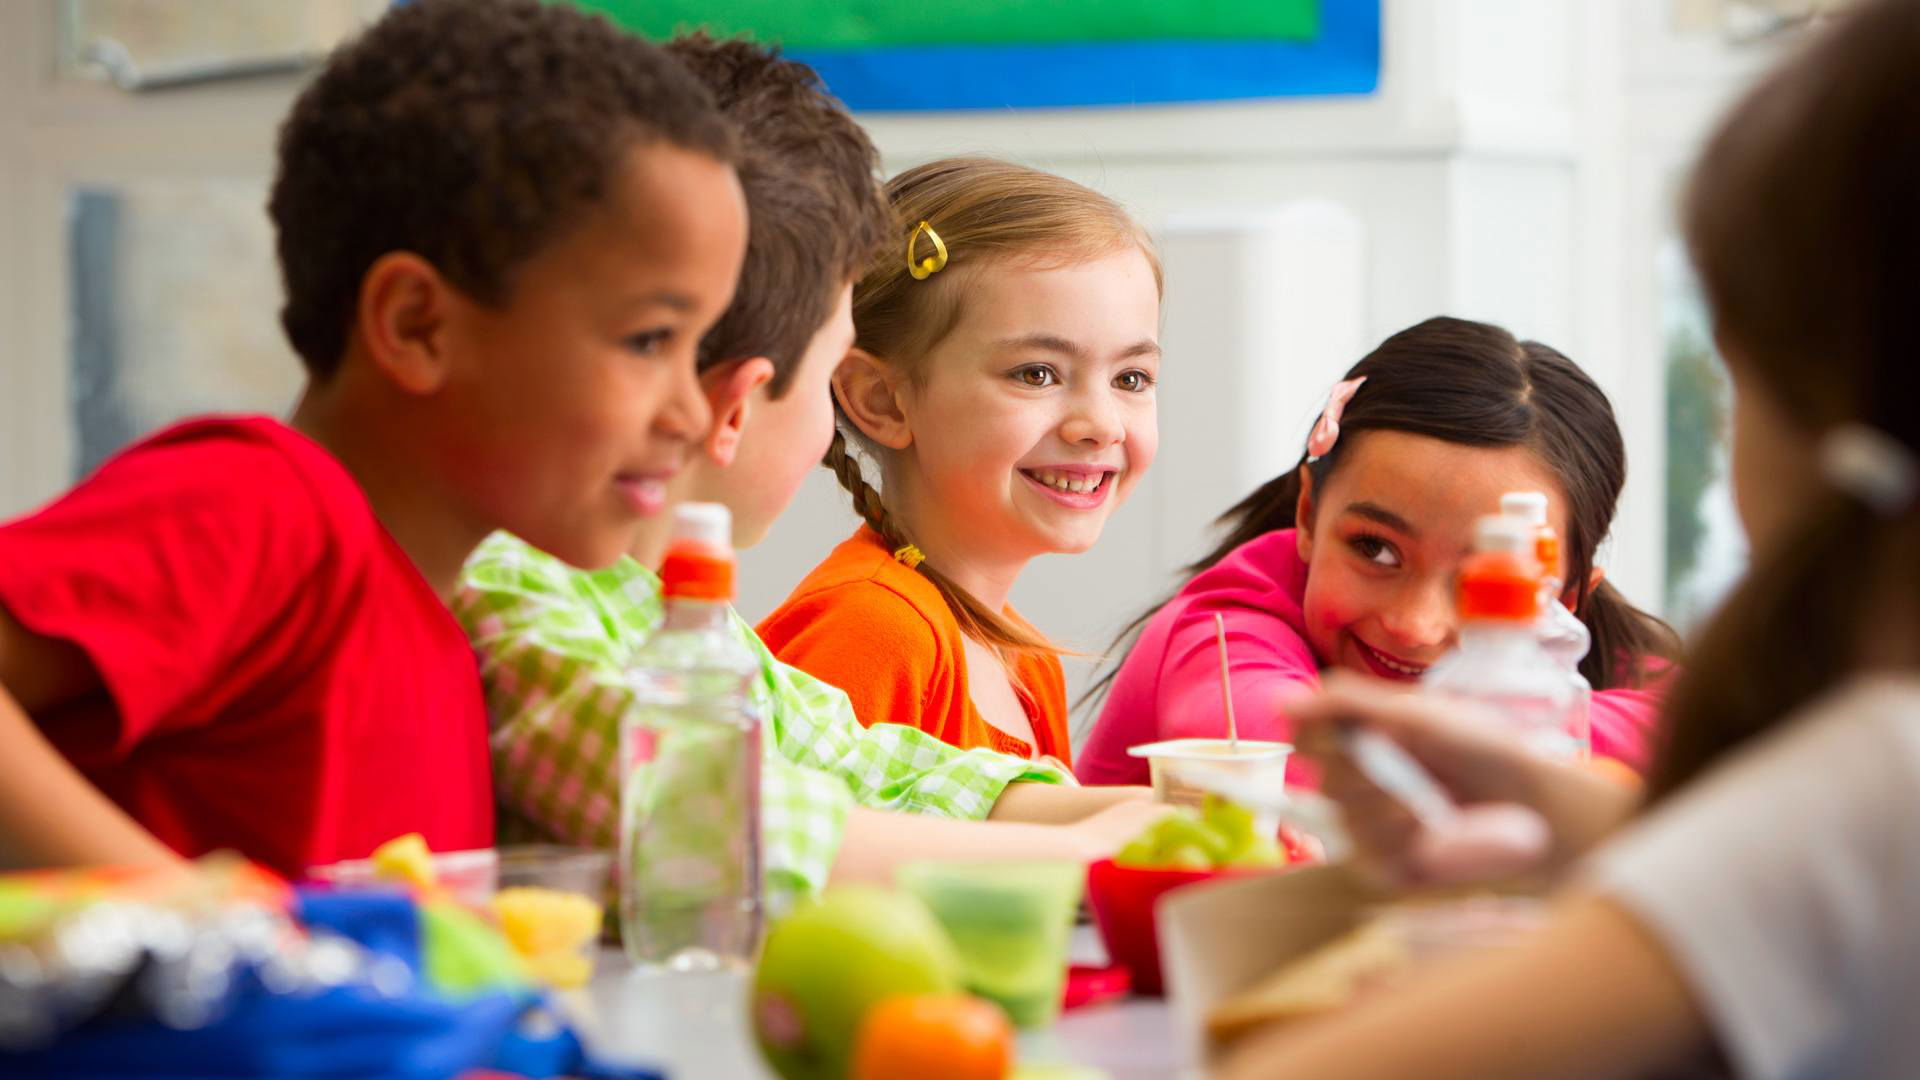 إرشادات غذائية جديدة تتضمن معلومات إضافية للرضع والأطفال الصغار لأول مرة